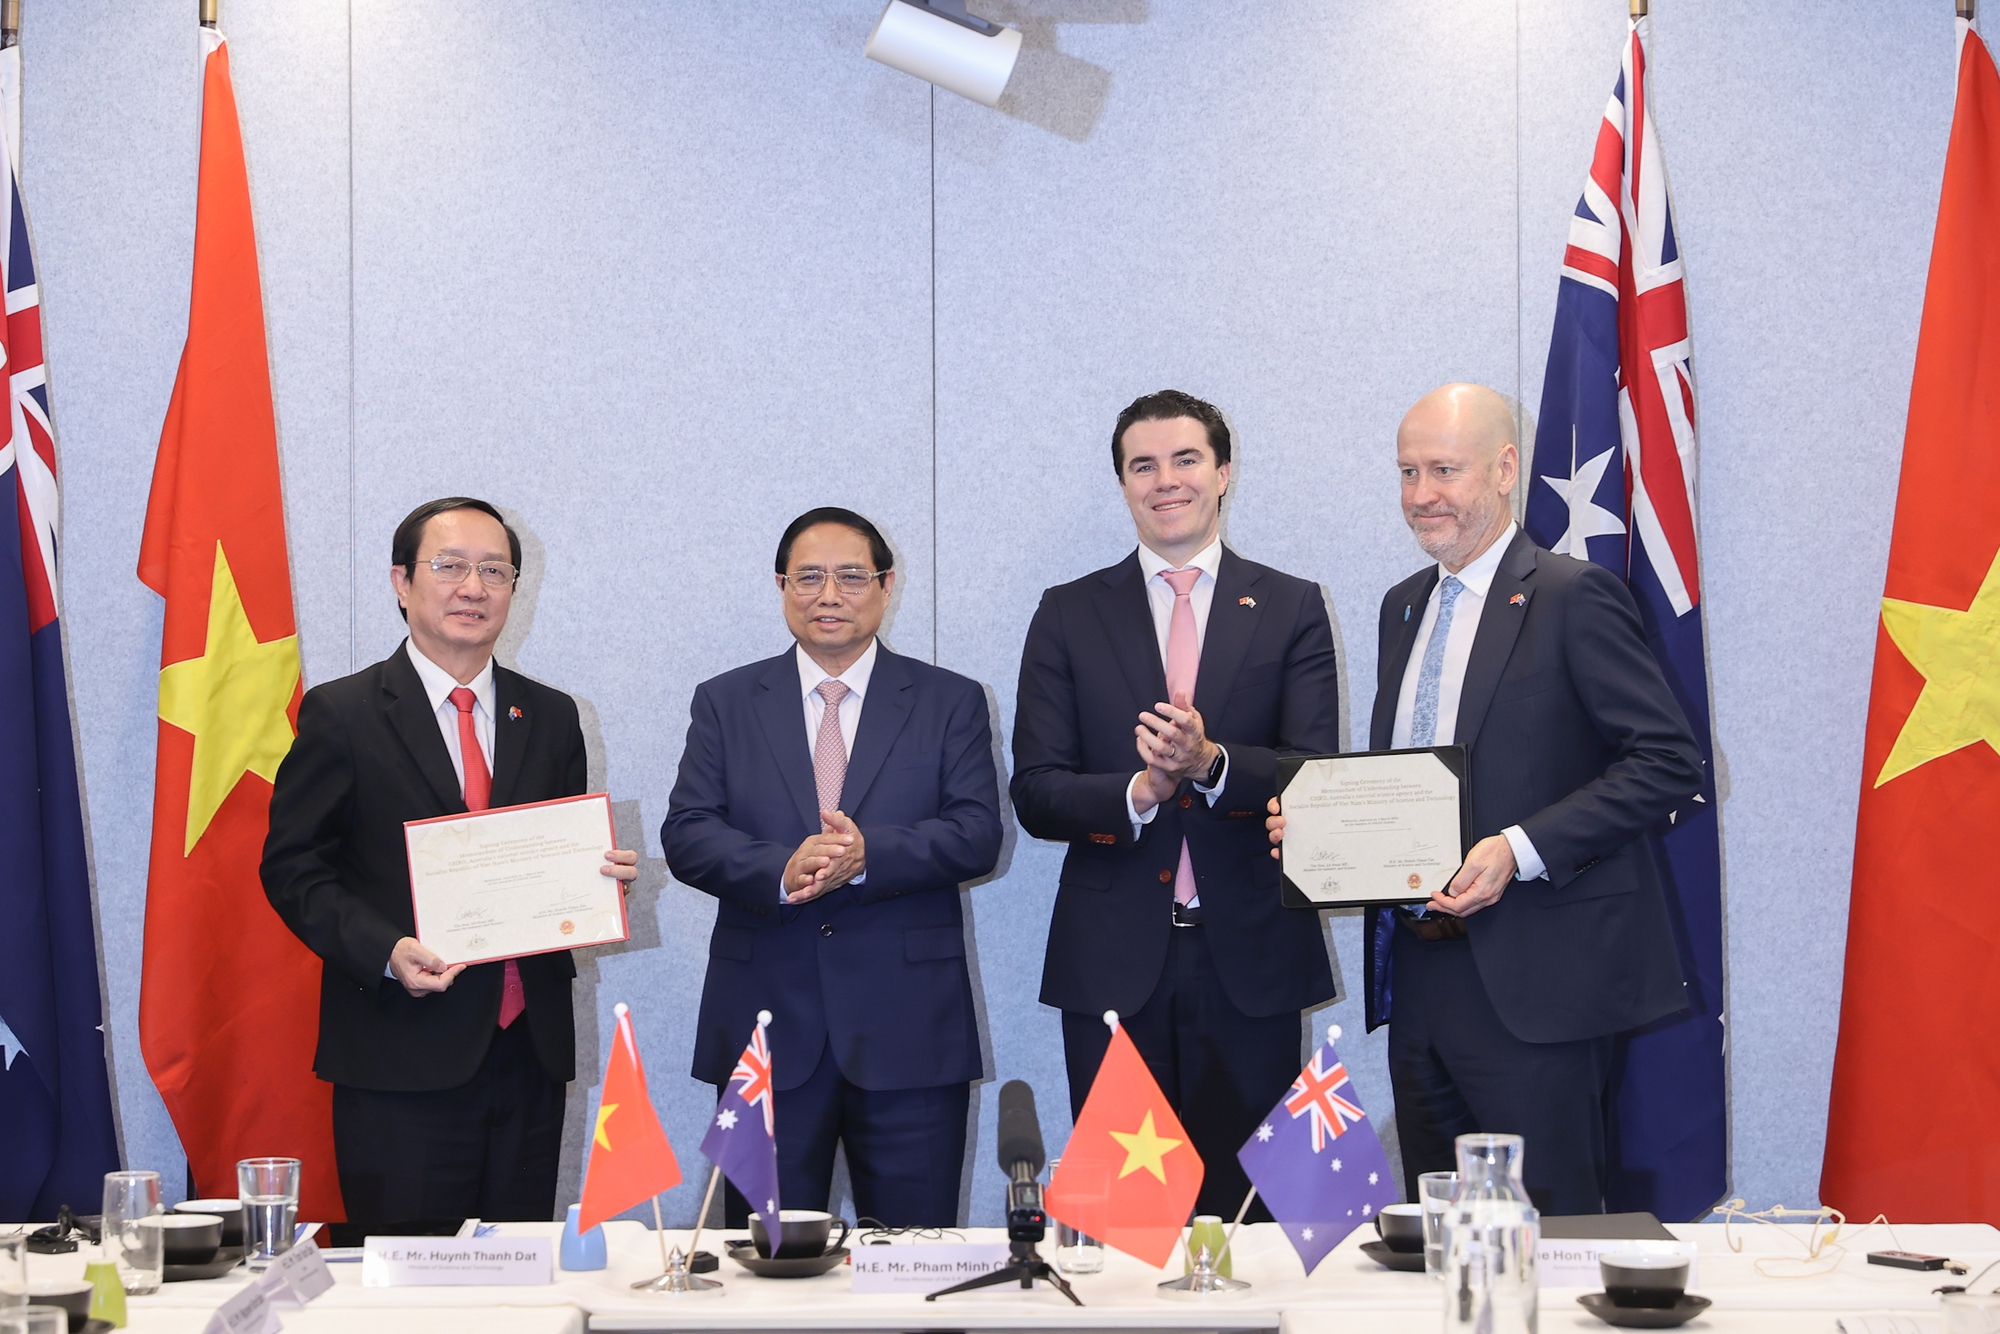 Thủ tướng chứng kiến Bộ trưởng Bộ Khoa học và Công nghệ Huỳnh Thành Đạt và Tổng Giám đốc CSIRO ký kết biên bản ghi nhớ hợp tác giữa hai cơ quan - Ảnh: VGP/Nhật Bắc